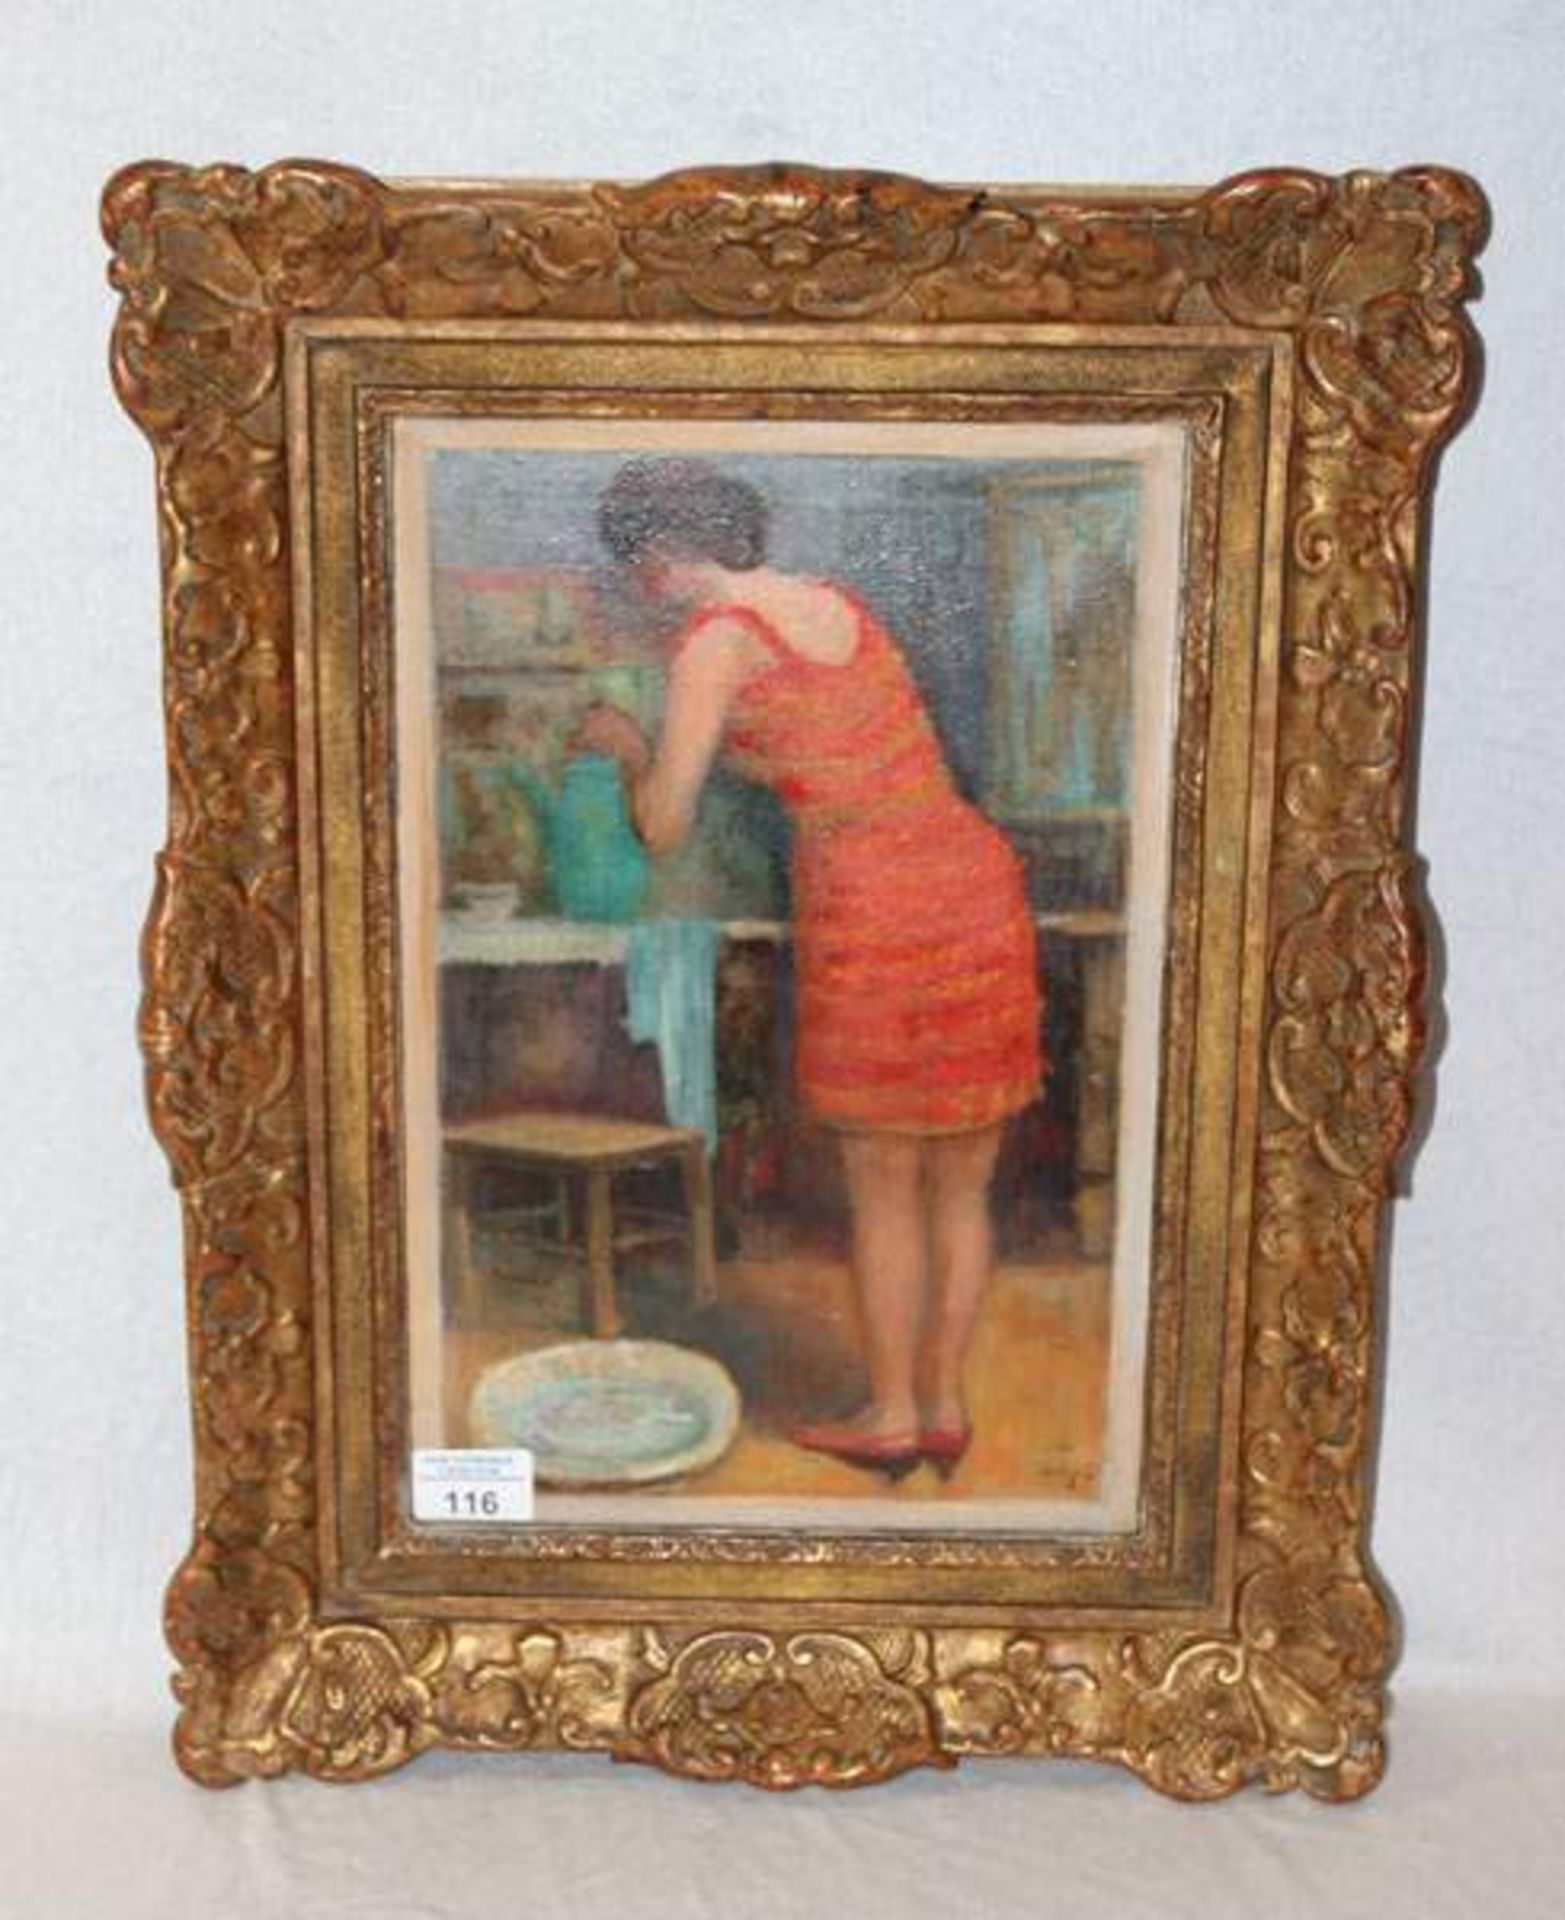 Gemälde ÖL/LW 'Frau im roten Kleid', undeutlich signiert, gerahmt, Rahmen leicht berieben, incl.